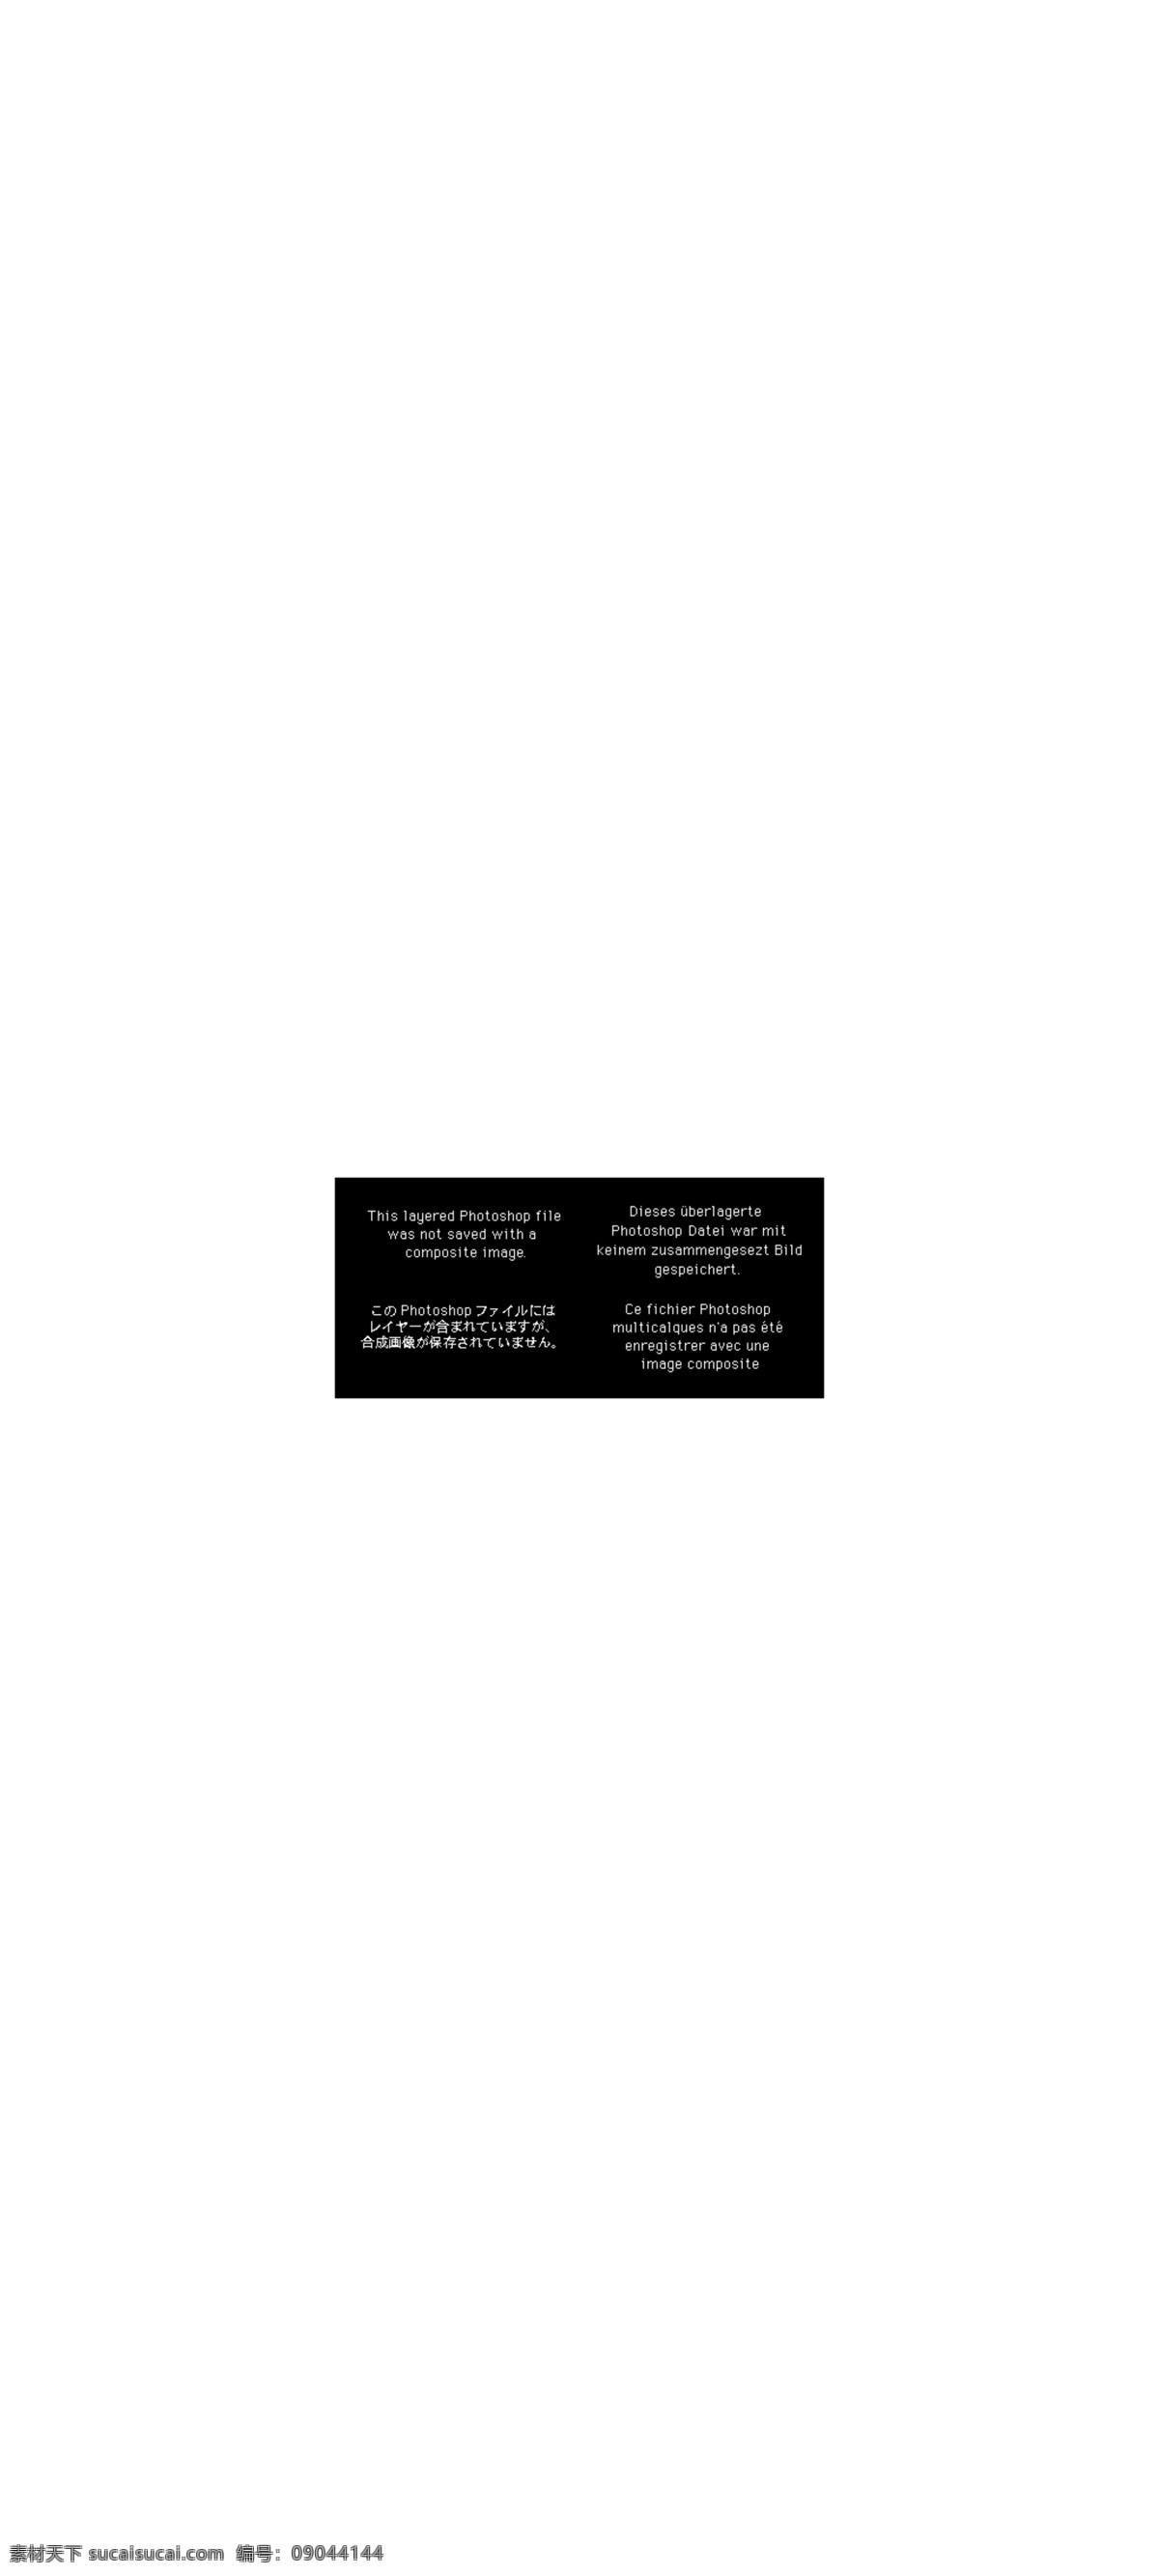 双十 狂欢 海报 字体 元素 双11海报 淘宝 天猫 双 促销 2017 首页 双11直通车 双11模板 双十一海报 双十一 双十一字体